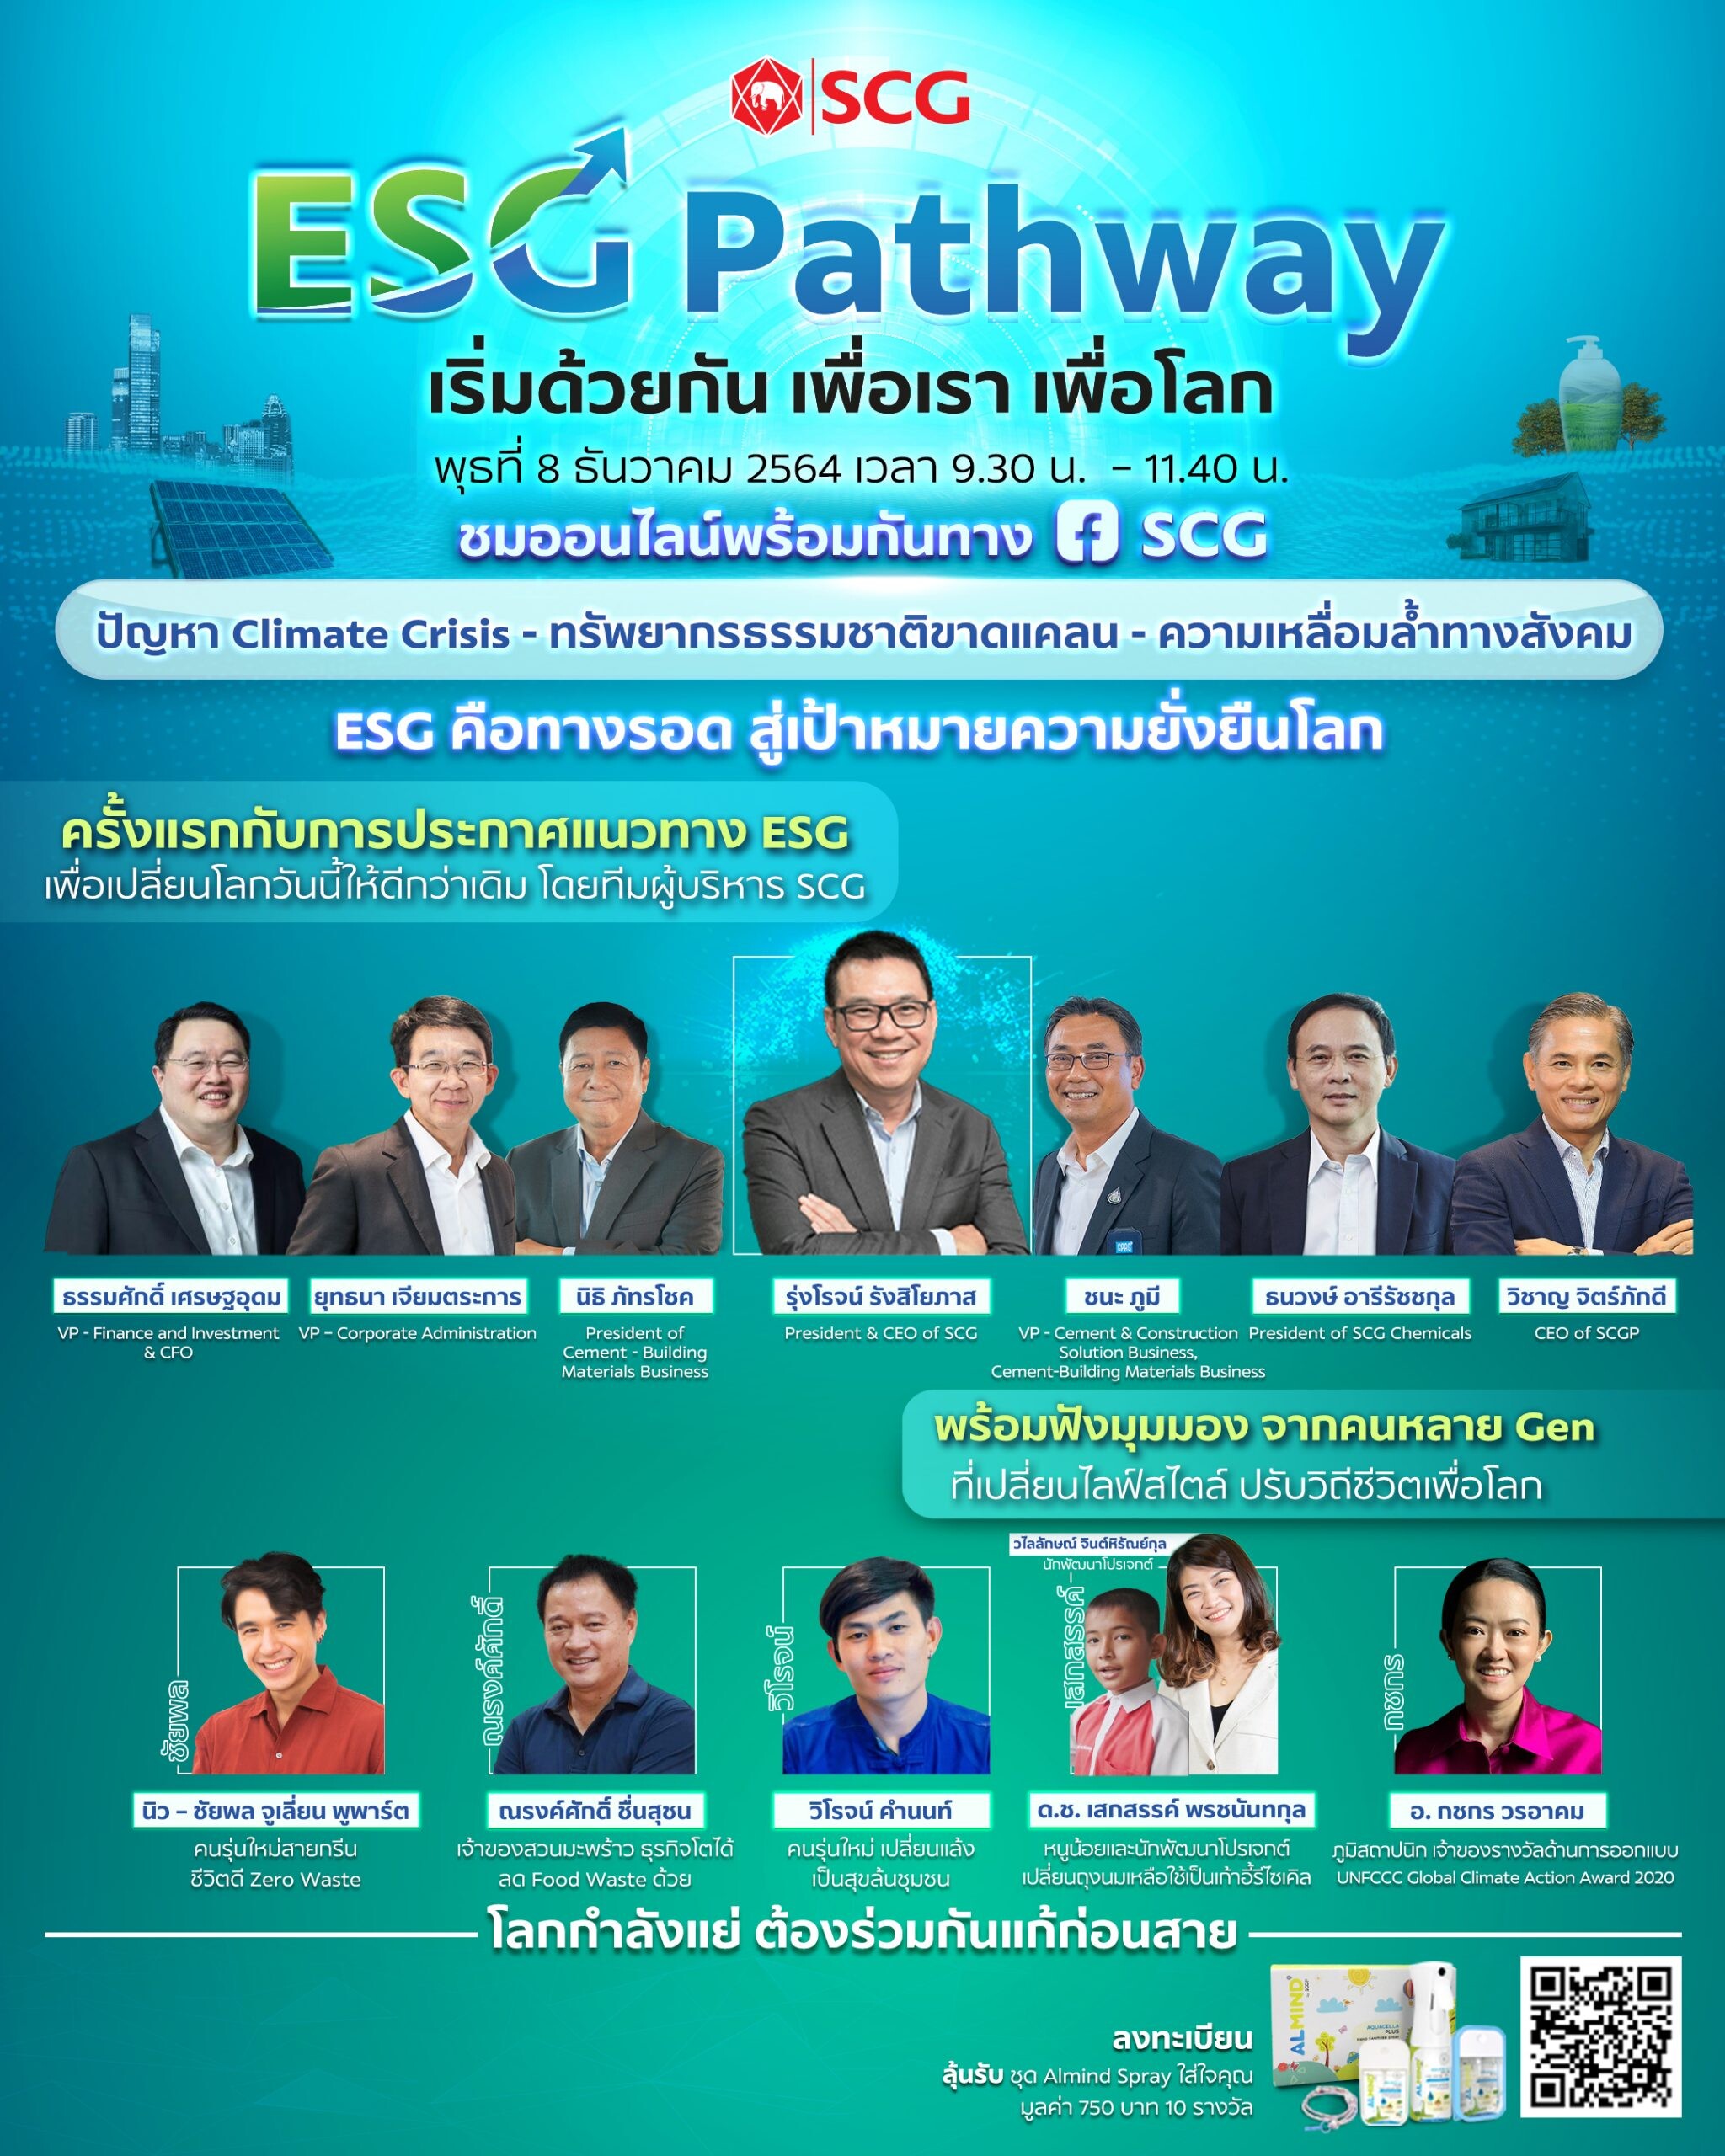 เอสซีจี ชวนคนไทยกู้วิกฤตโลก ในงาน "ESG Pathway เริ่มด้วยกัน เพื่อเรา เพื่อโลก"